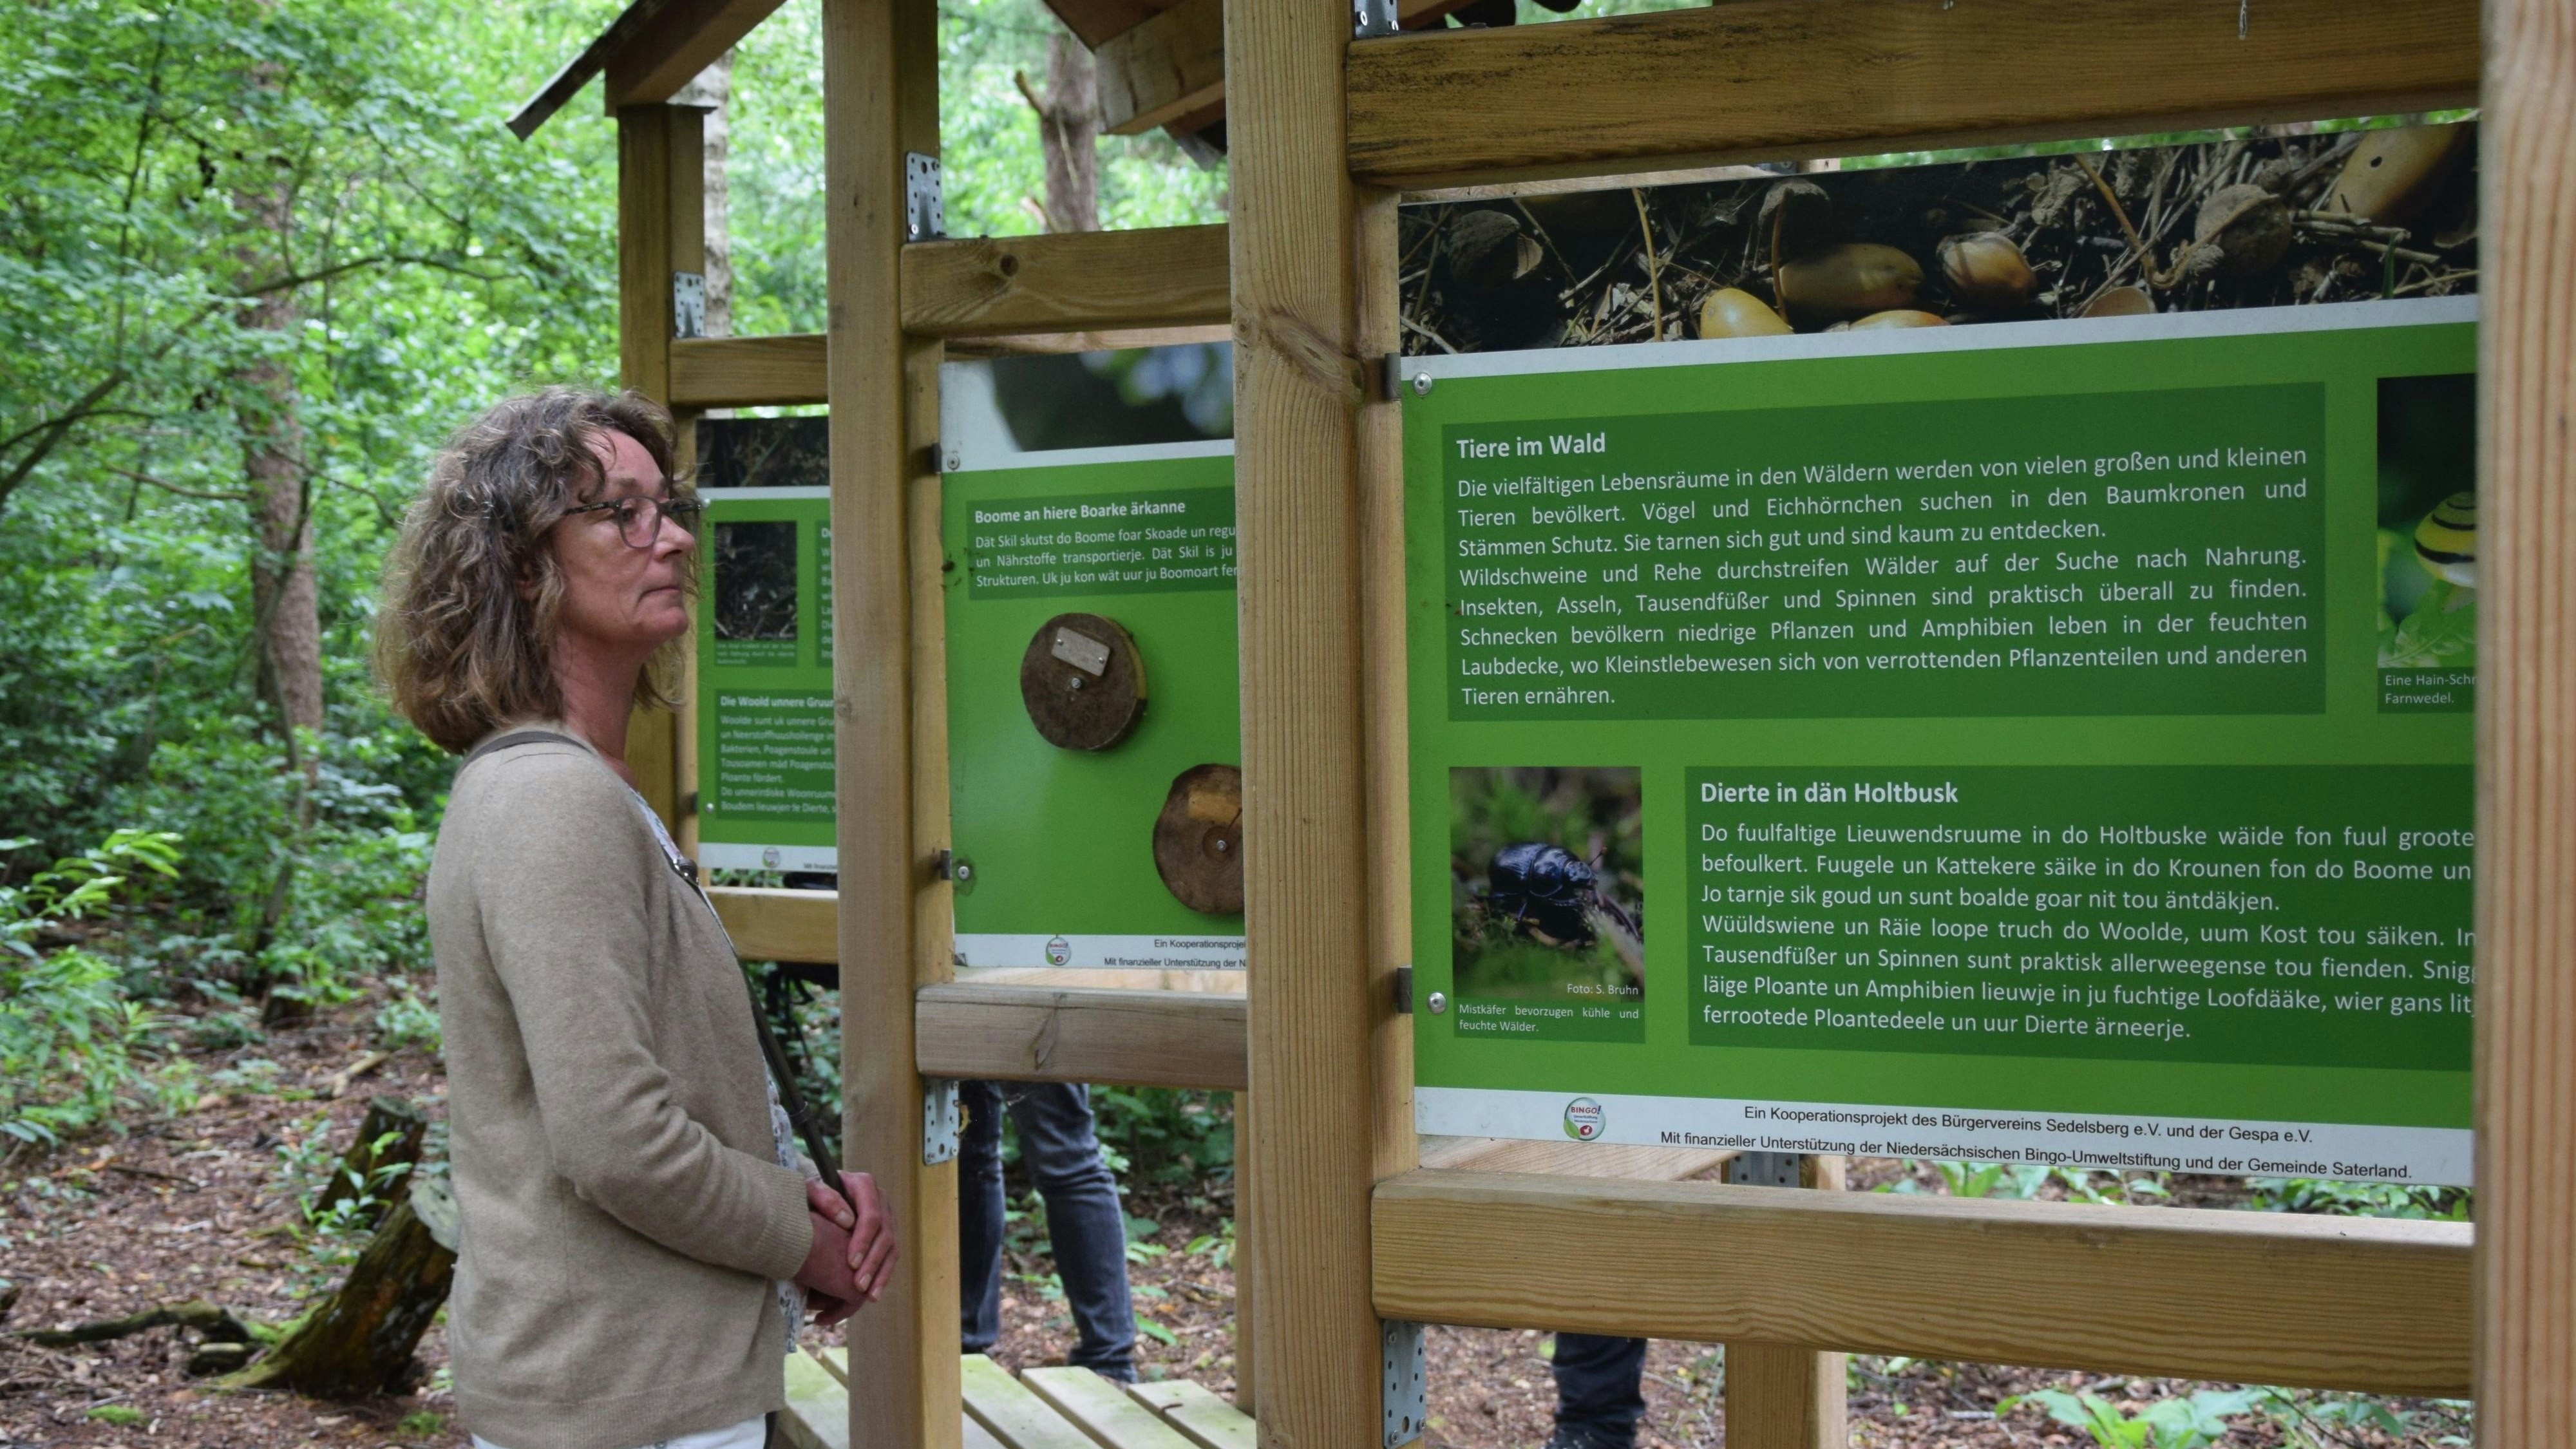 Waldbewohner: Hedwig Dohlen schaute sich die Infotafeln an, die Wissenswertes über die Tiere im Wald vermittelten. Foto: Hahn